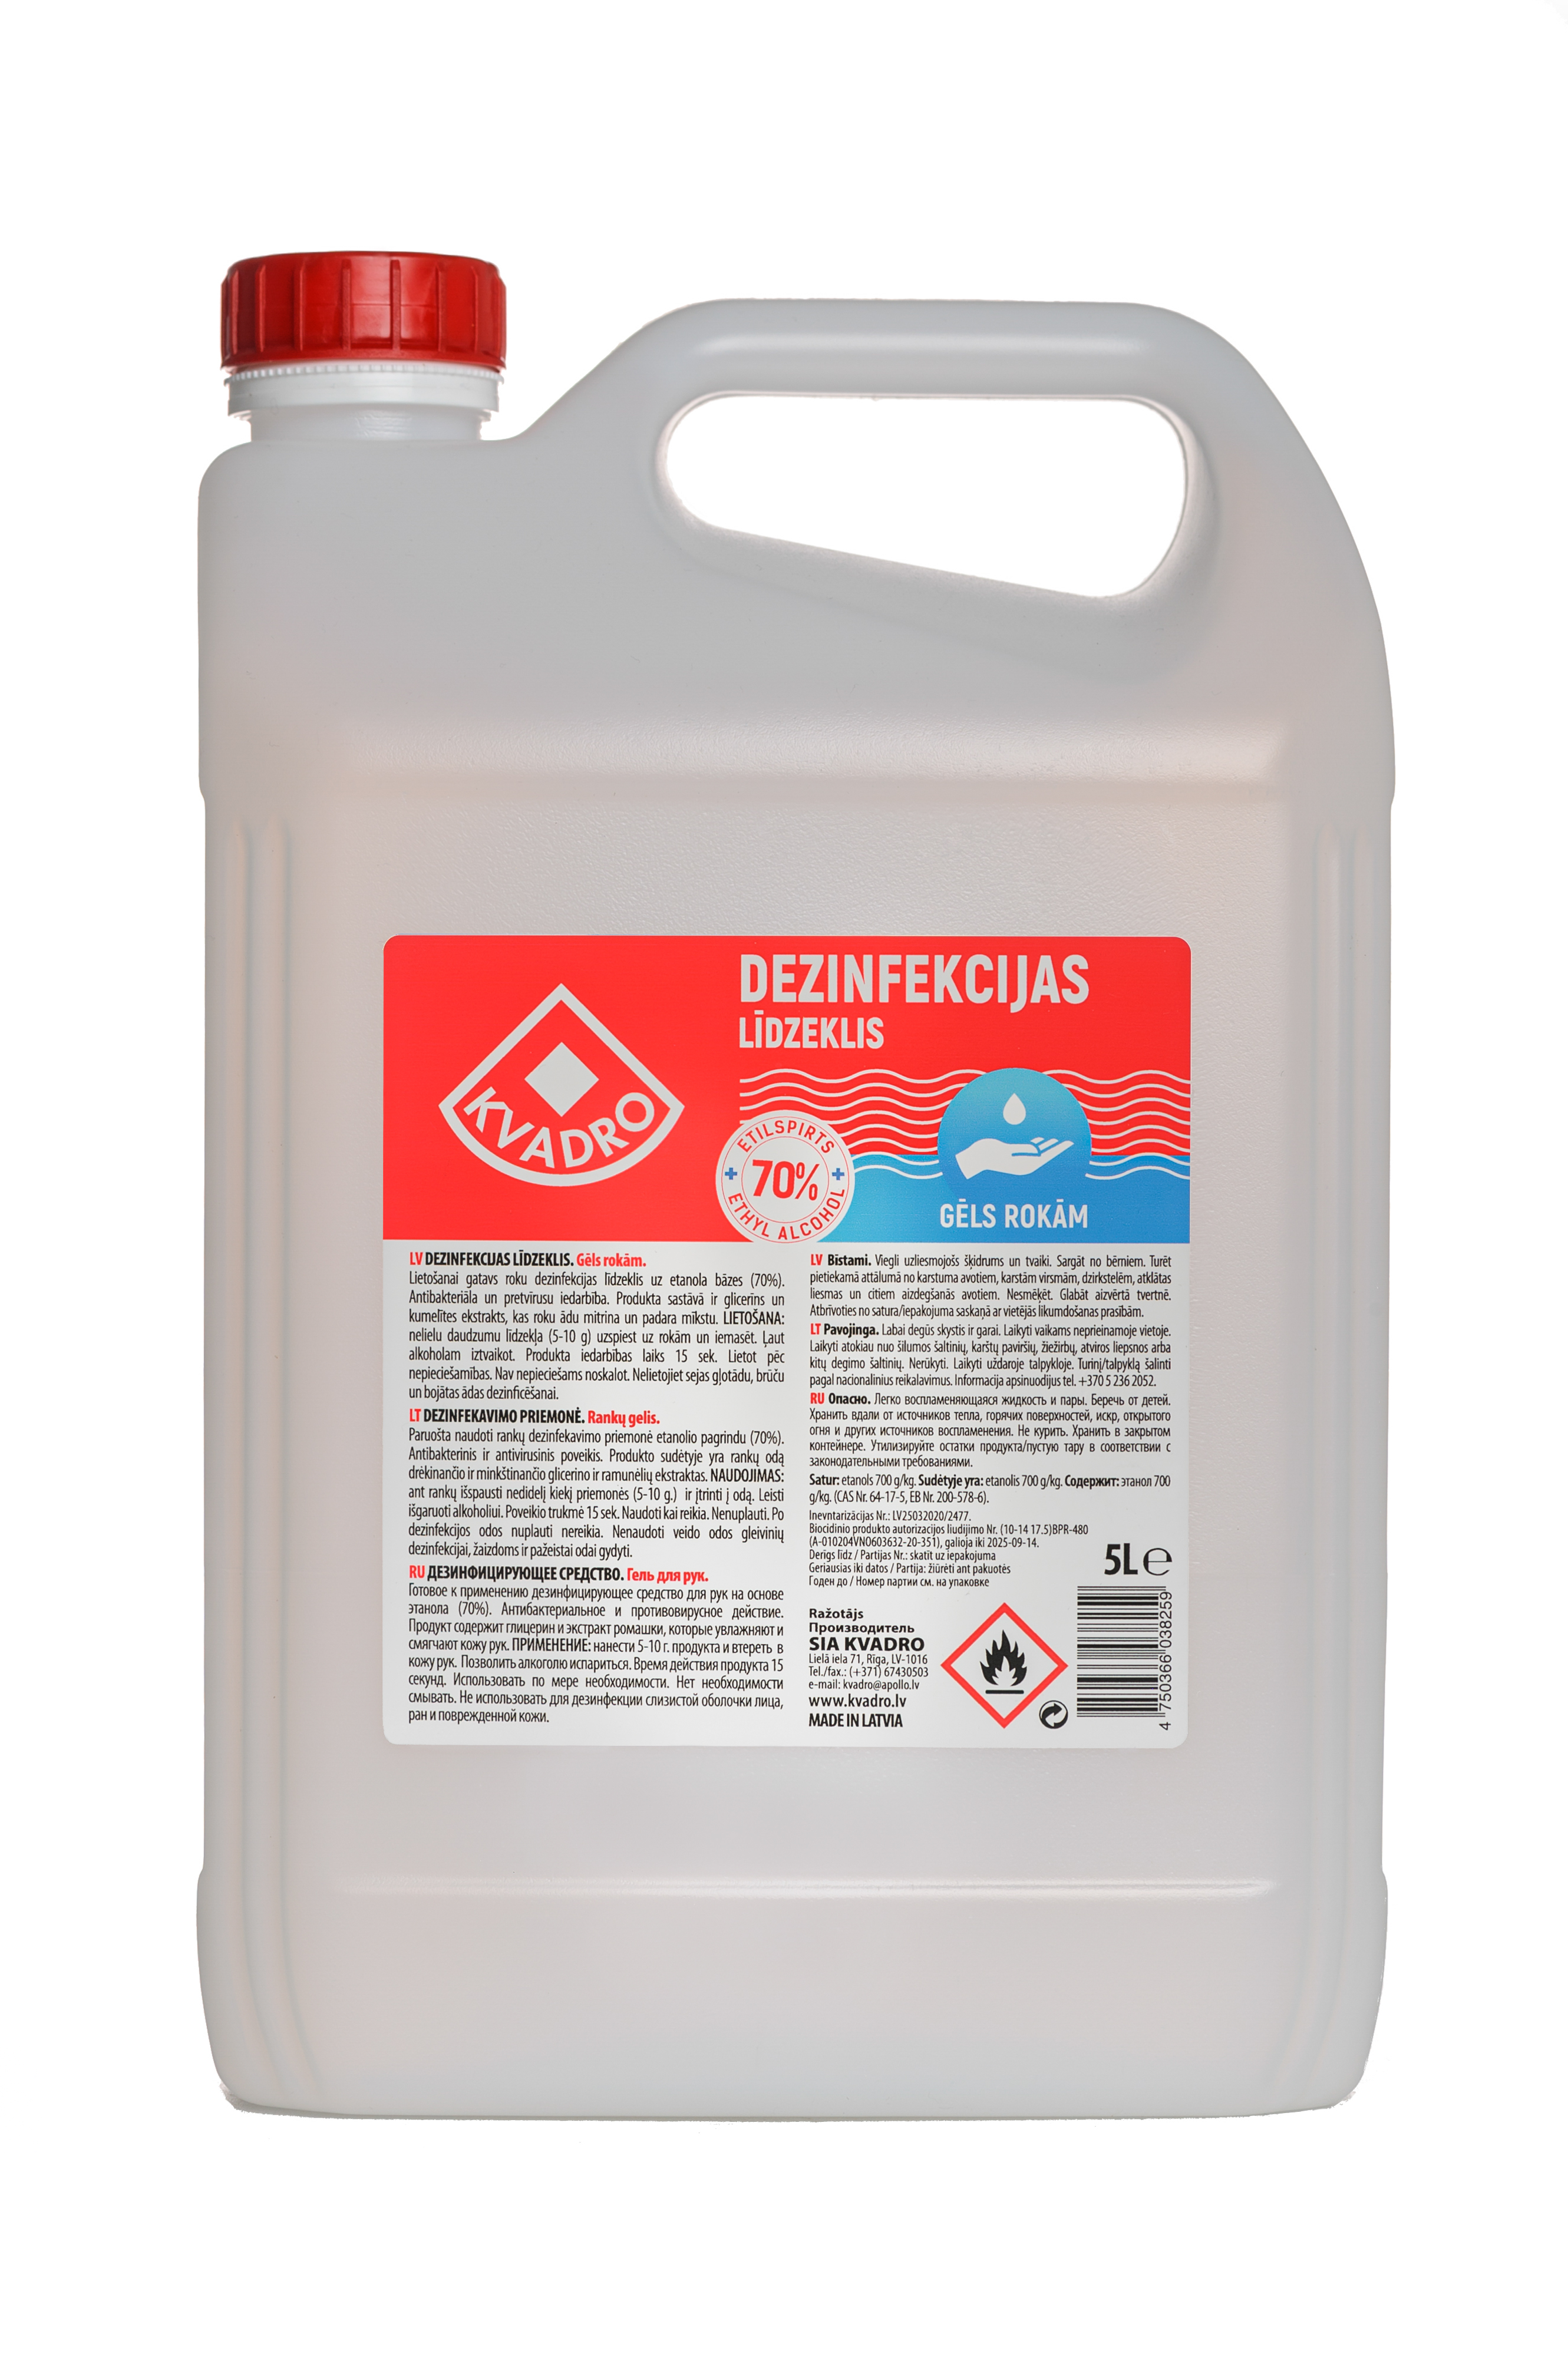 Dezinfekcijas līdzeklis - gēls rokām Kvadro, 70% etanols, 5L